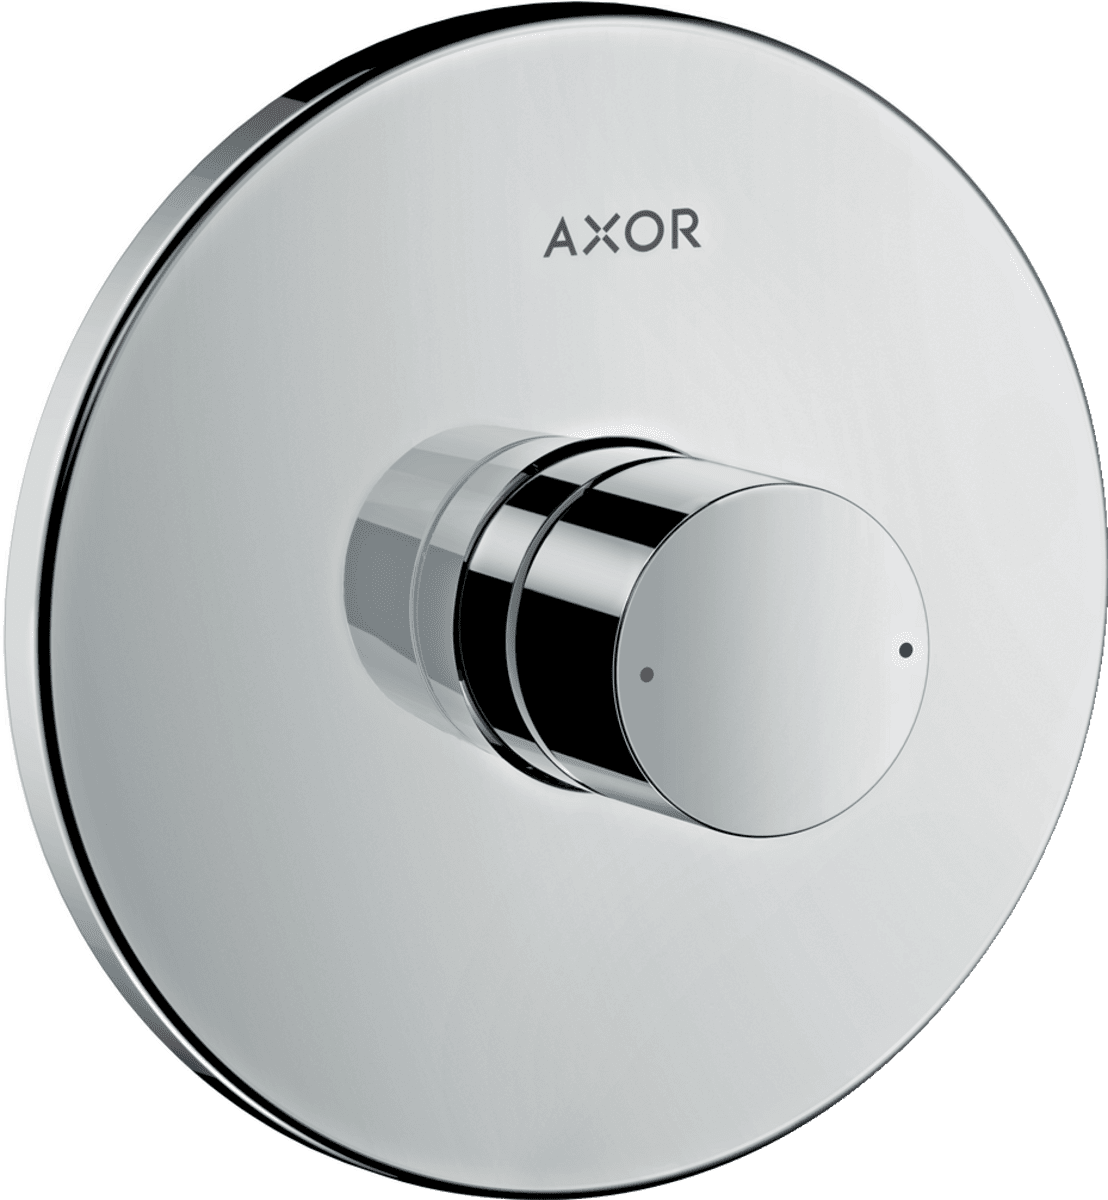 HANSGROHE AXOR Uno Tek kollu duş bataryası ankastre montaj için zero volan #45605000 - Krom resmi